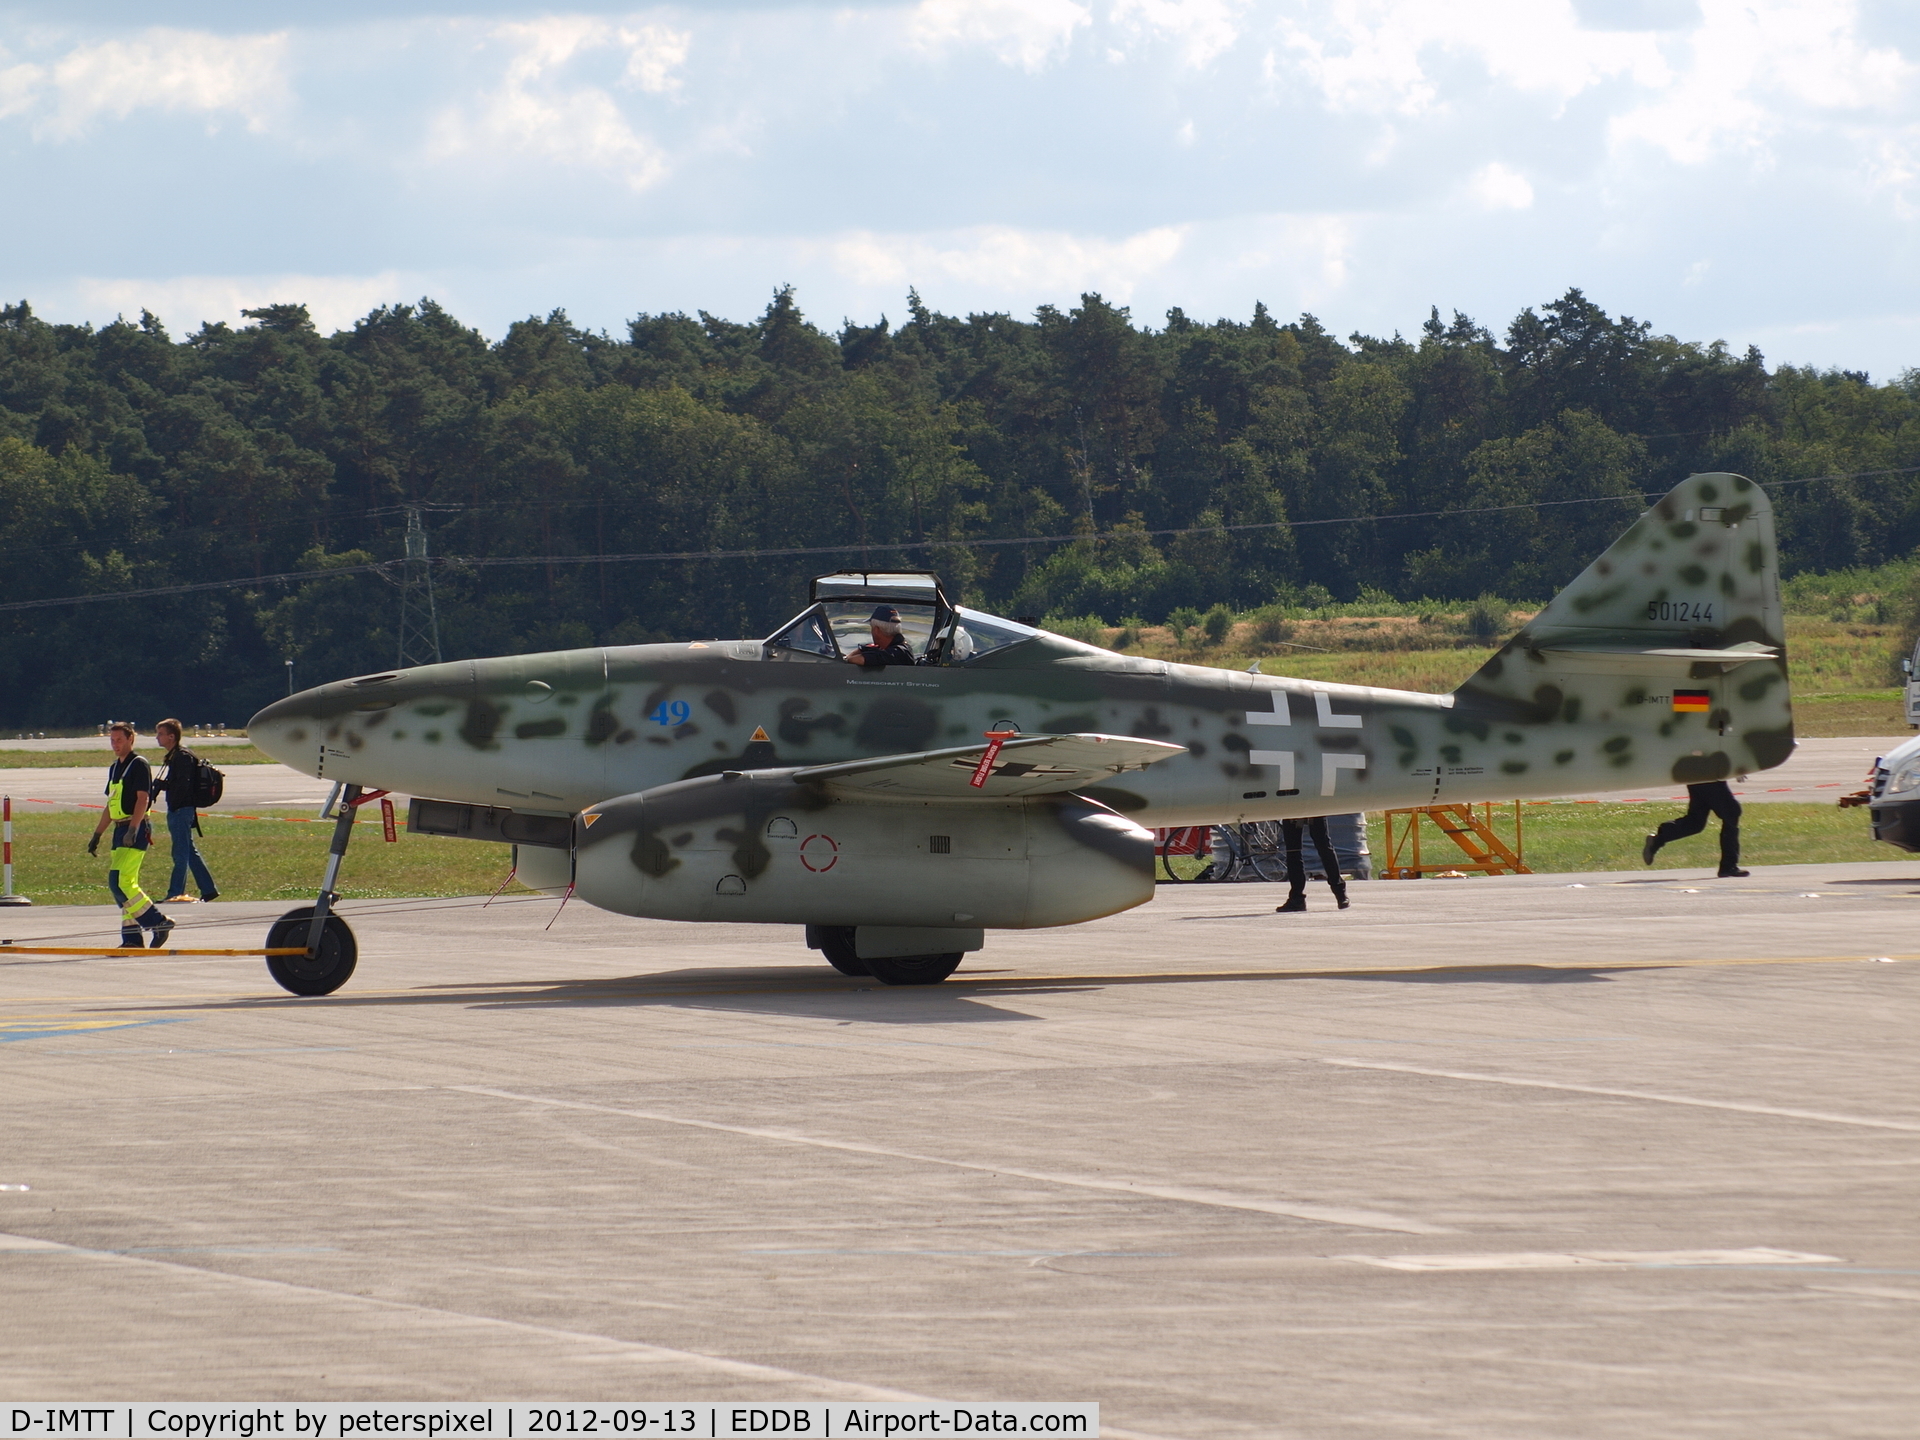 D-IMTT, 2005 Messerschmitt Me-262A-1C Schwalbe Replica C/N 501244, ILA Berlin Air Show 2012